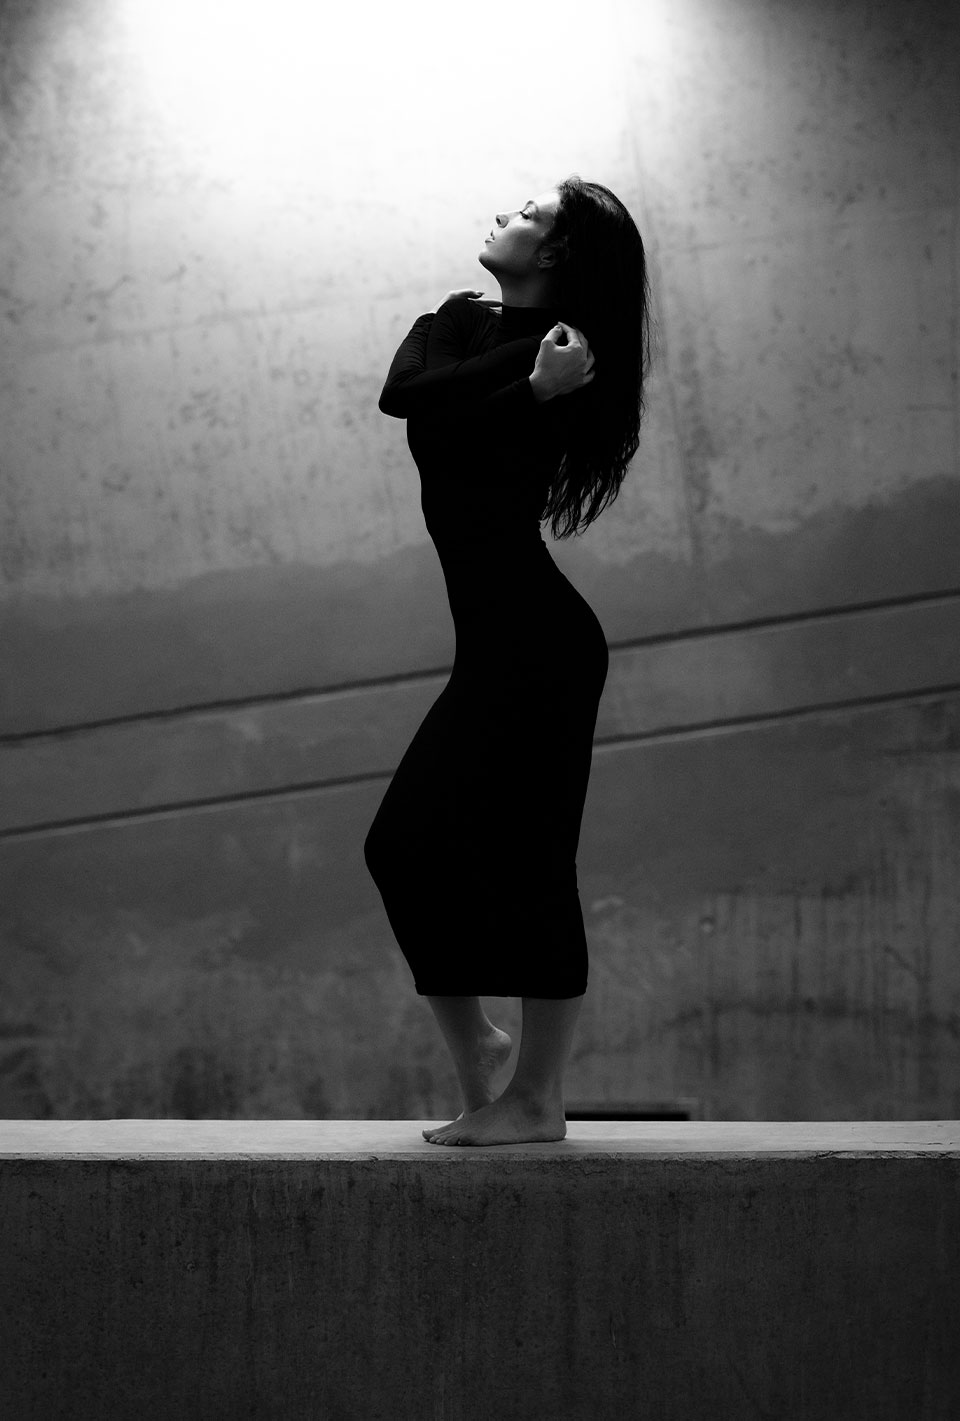 Schwarz-Weiß-Foto einer barfüßigen Frau in einem langen, engen Kleid, die sich in einer Tanzpose vor einer Betonwand bewegt.